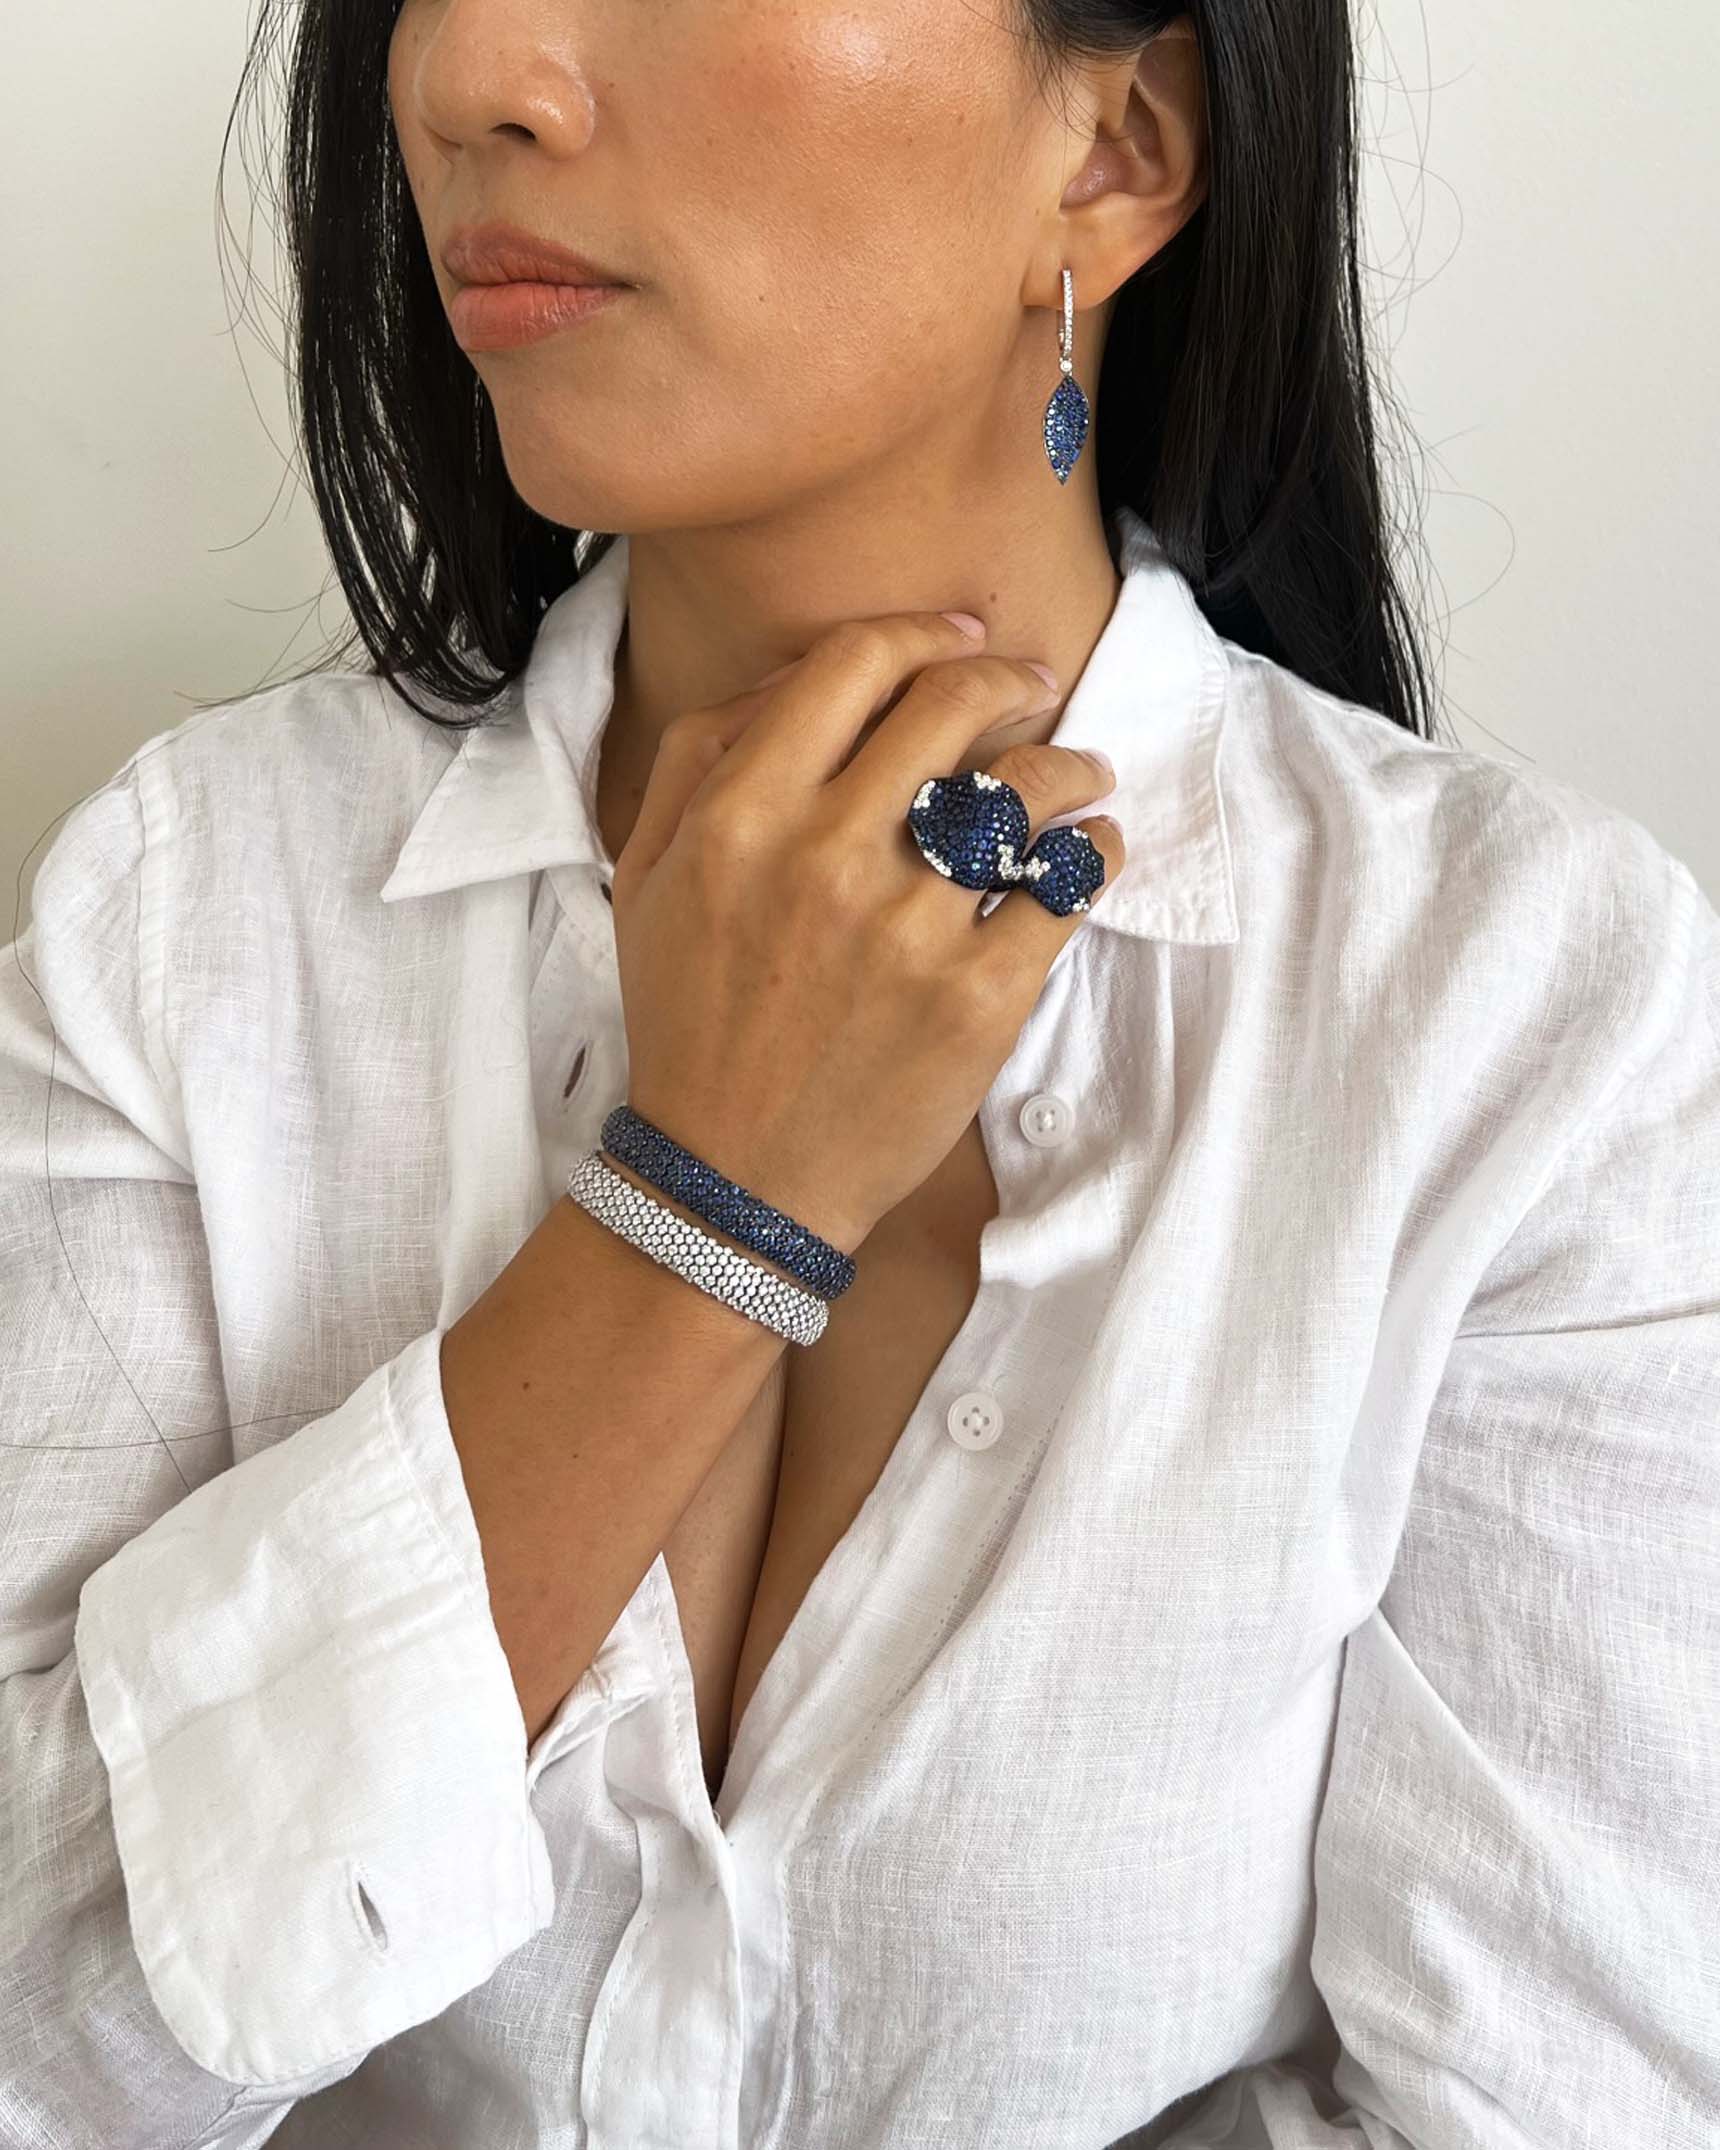 Blue Sapphire and Diamond Earrings_Ring and Bracelets ECD5K03392 – RFDG02927 – BCO3K00165 – BDOTK05023